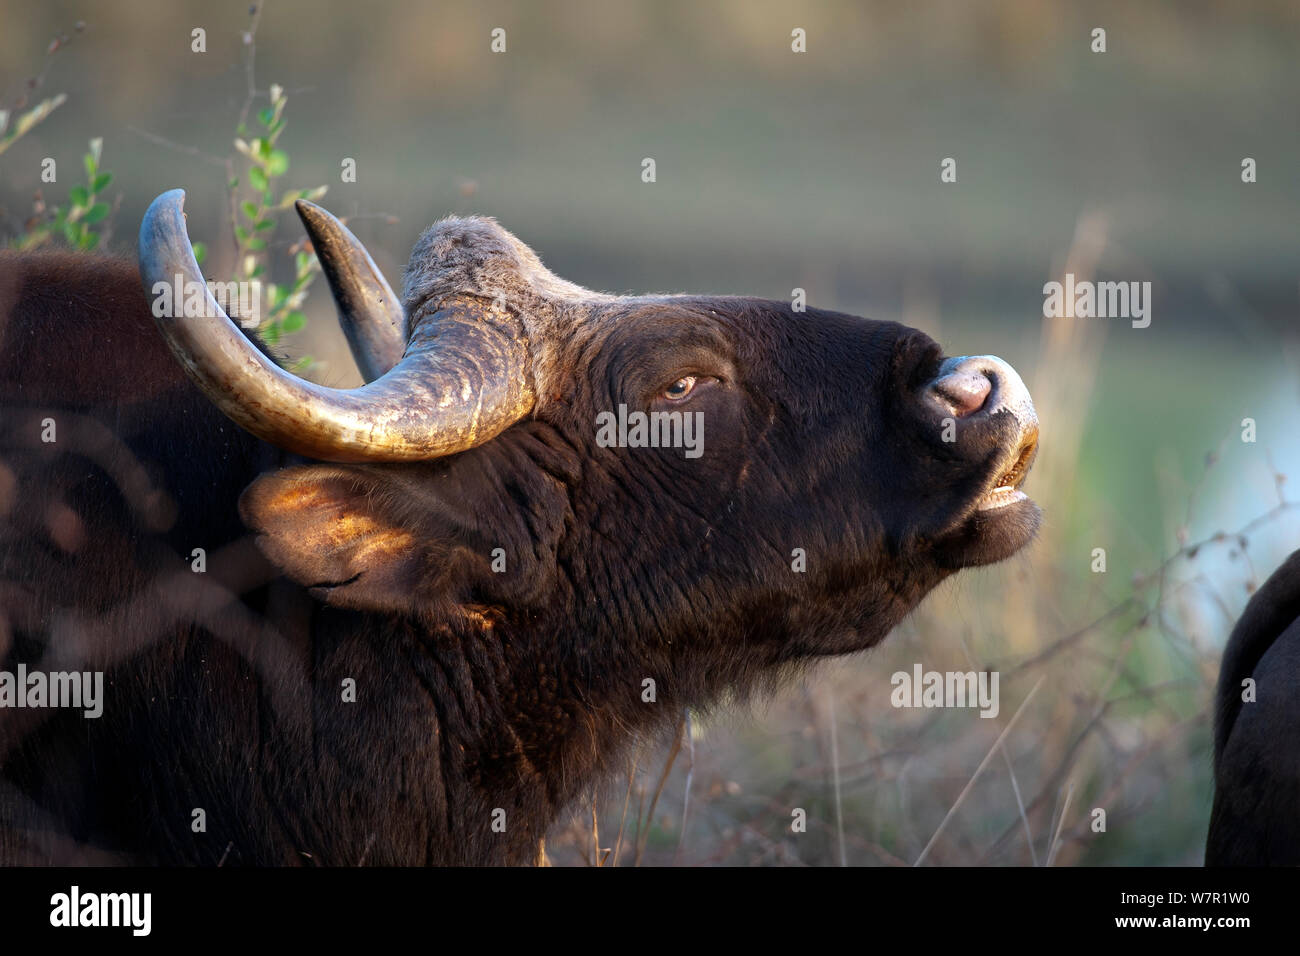 Gaur (Bos gaurus), Alt, männlich, Ohren zerrissen, flehmen Körperhaltung Duft zu erkennen, Kanha Nationalpark, Madhya Pradesh, Indien. Gefährdete Arten. Stockfoto